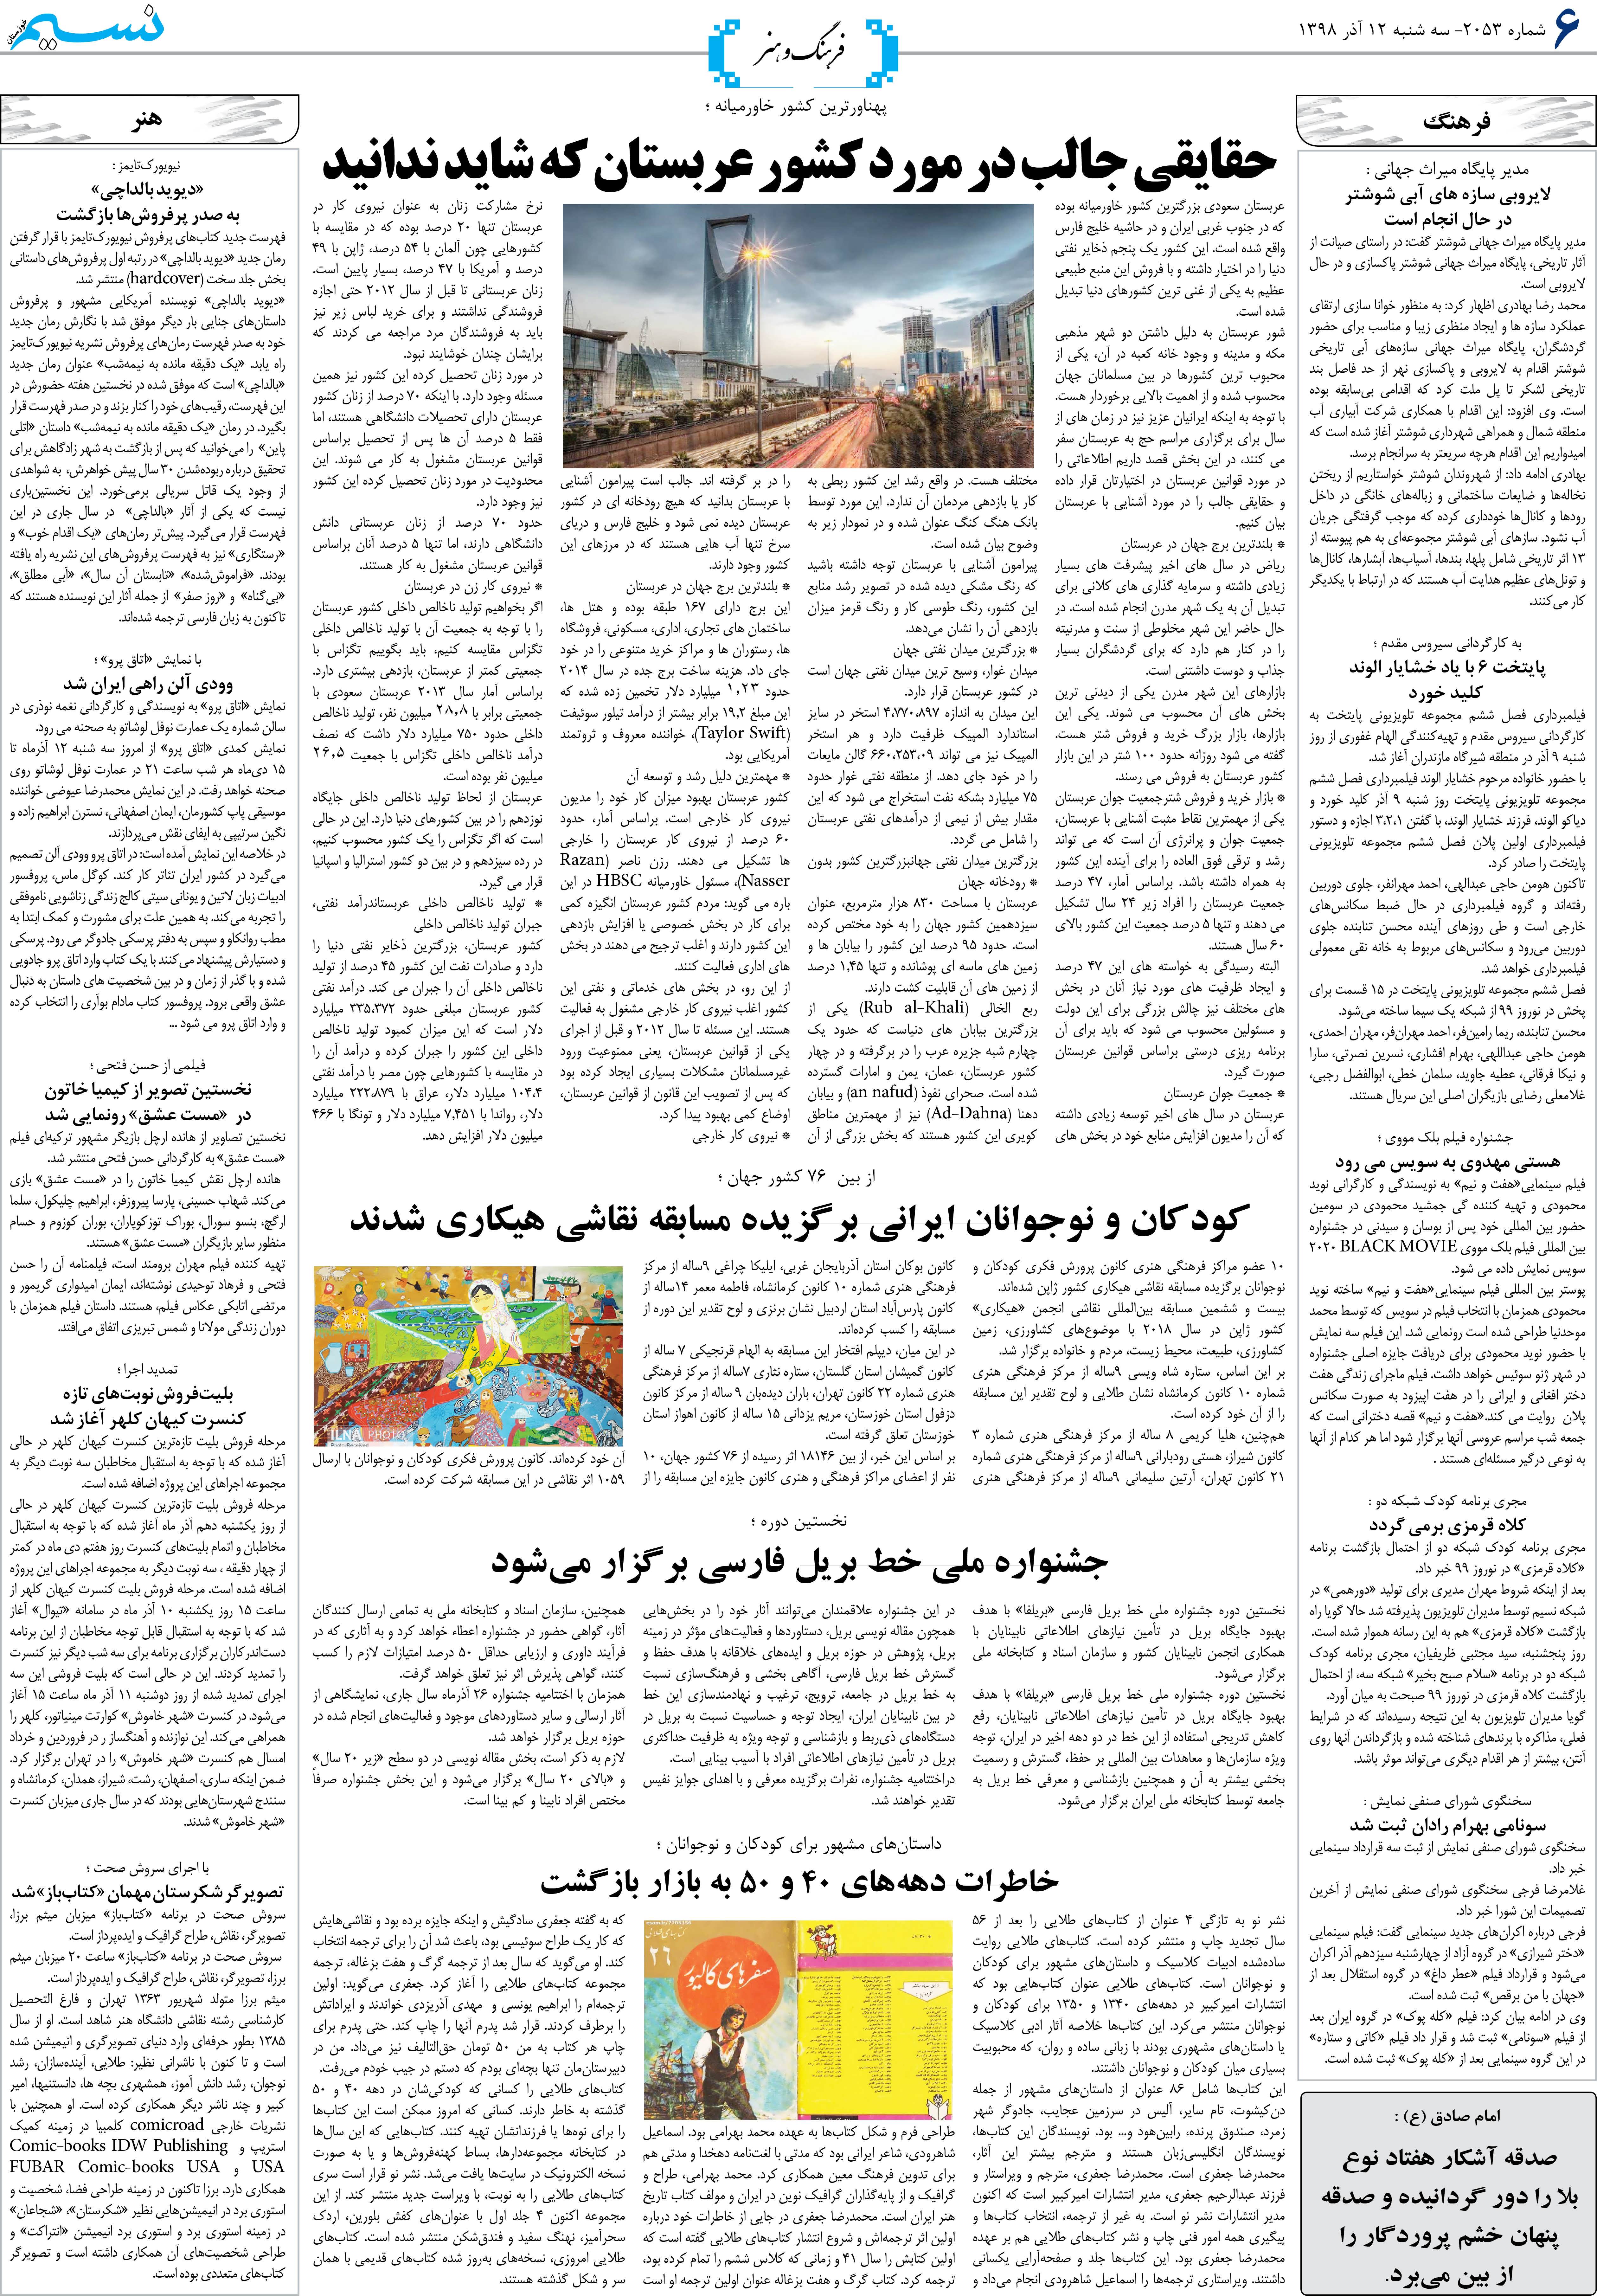 صفحه فرهنگ و هنر روزنامه نسیم شماره 2053